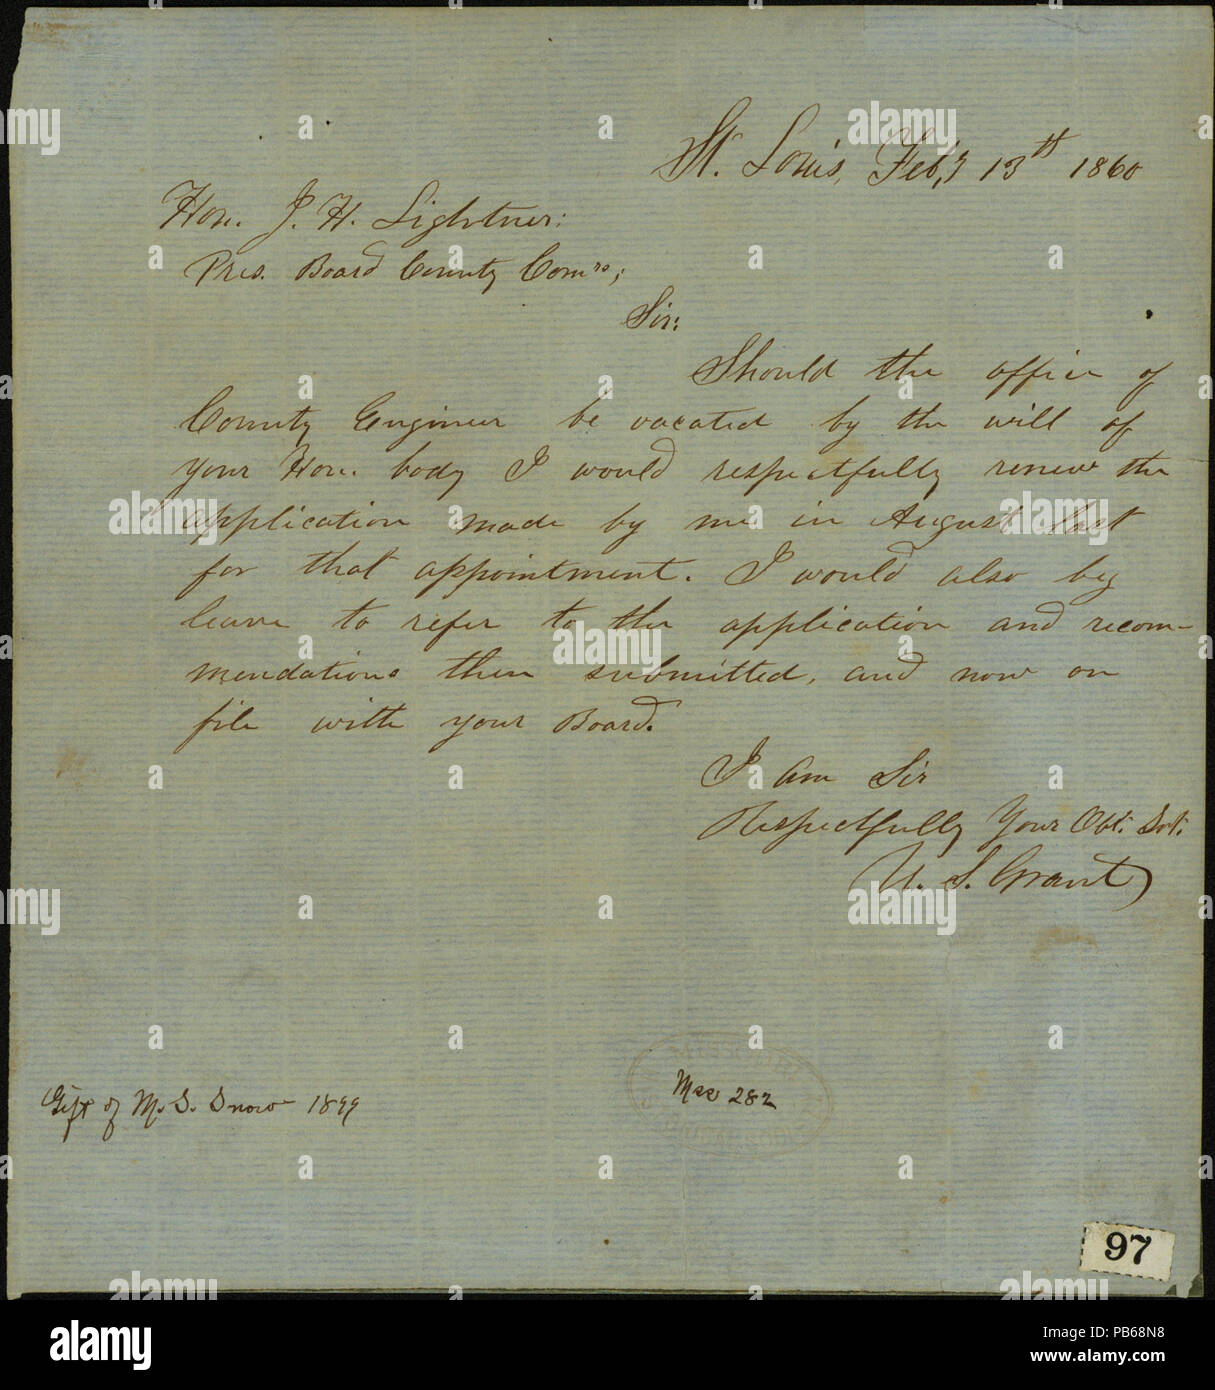 913 Letter signed U.S. Grant, St. Louis, to Hon. J.H. Lightner, February 13, 1860 Stock Photo